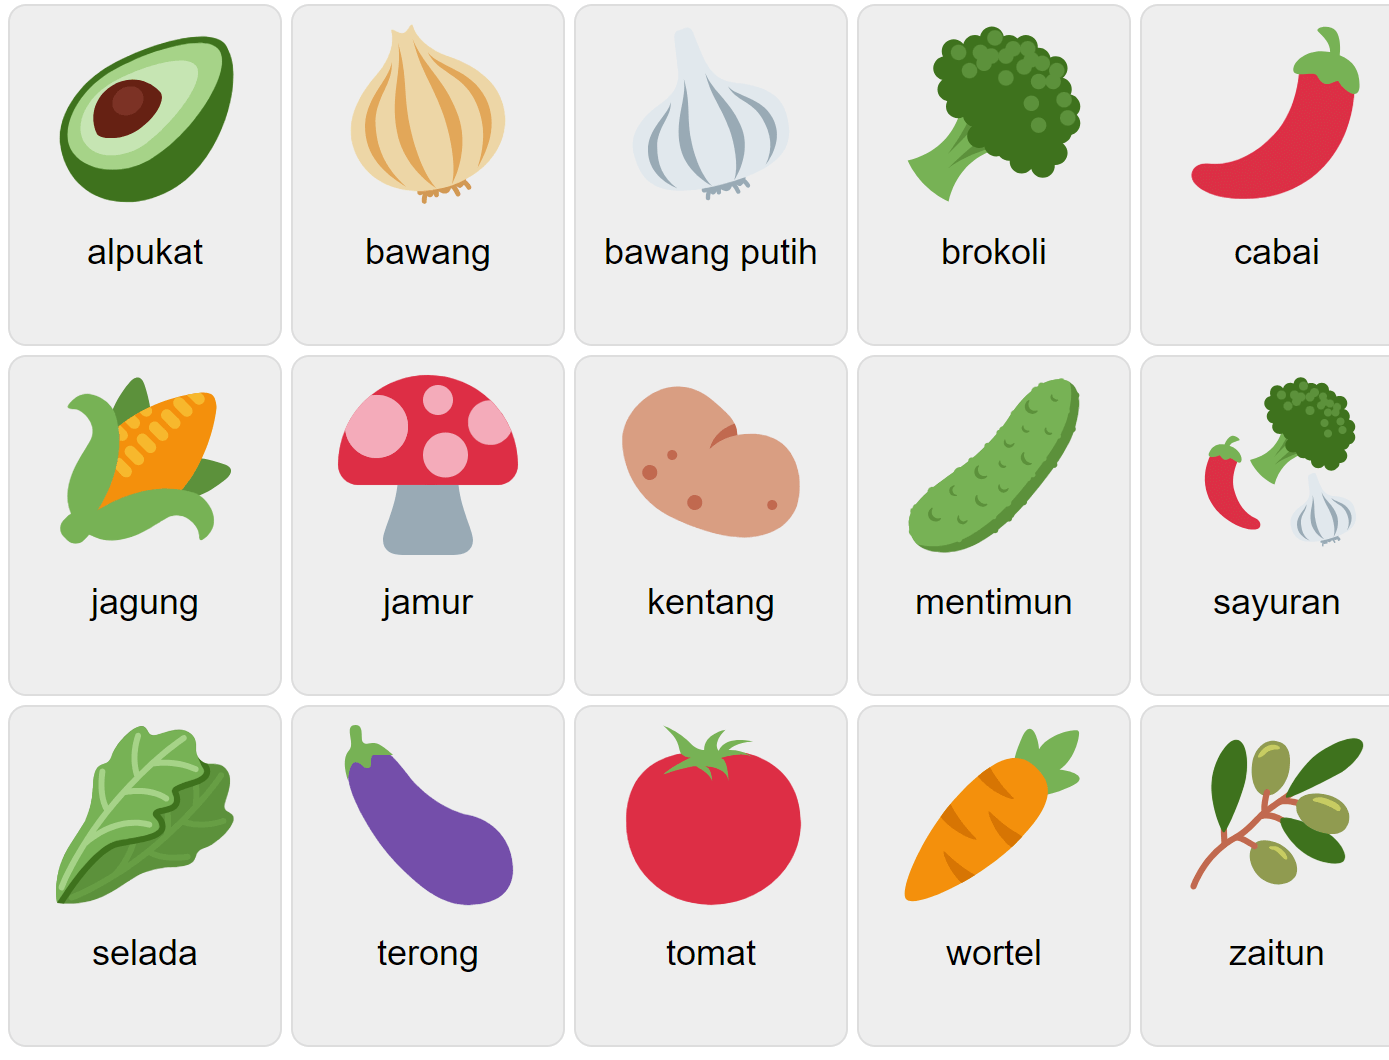 Овочі індонезійською мовою